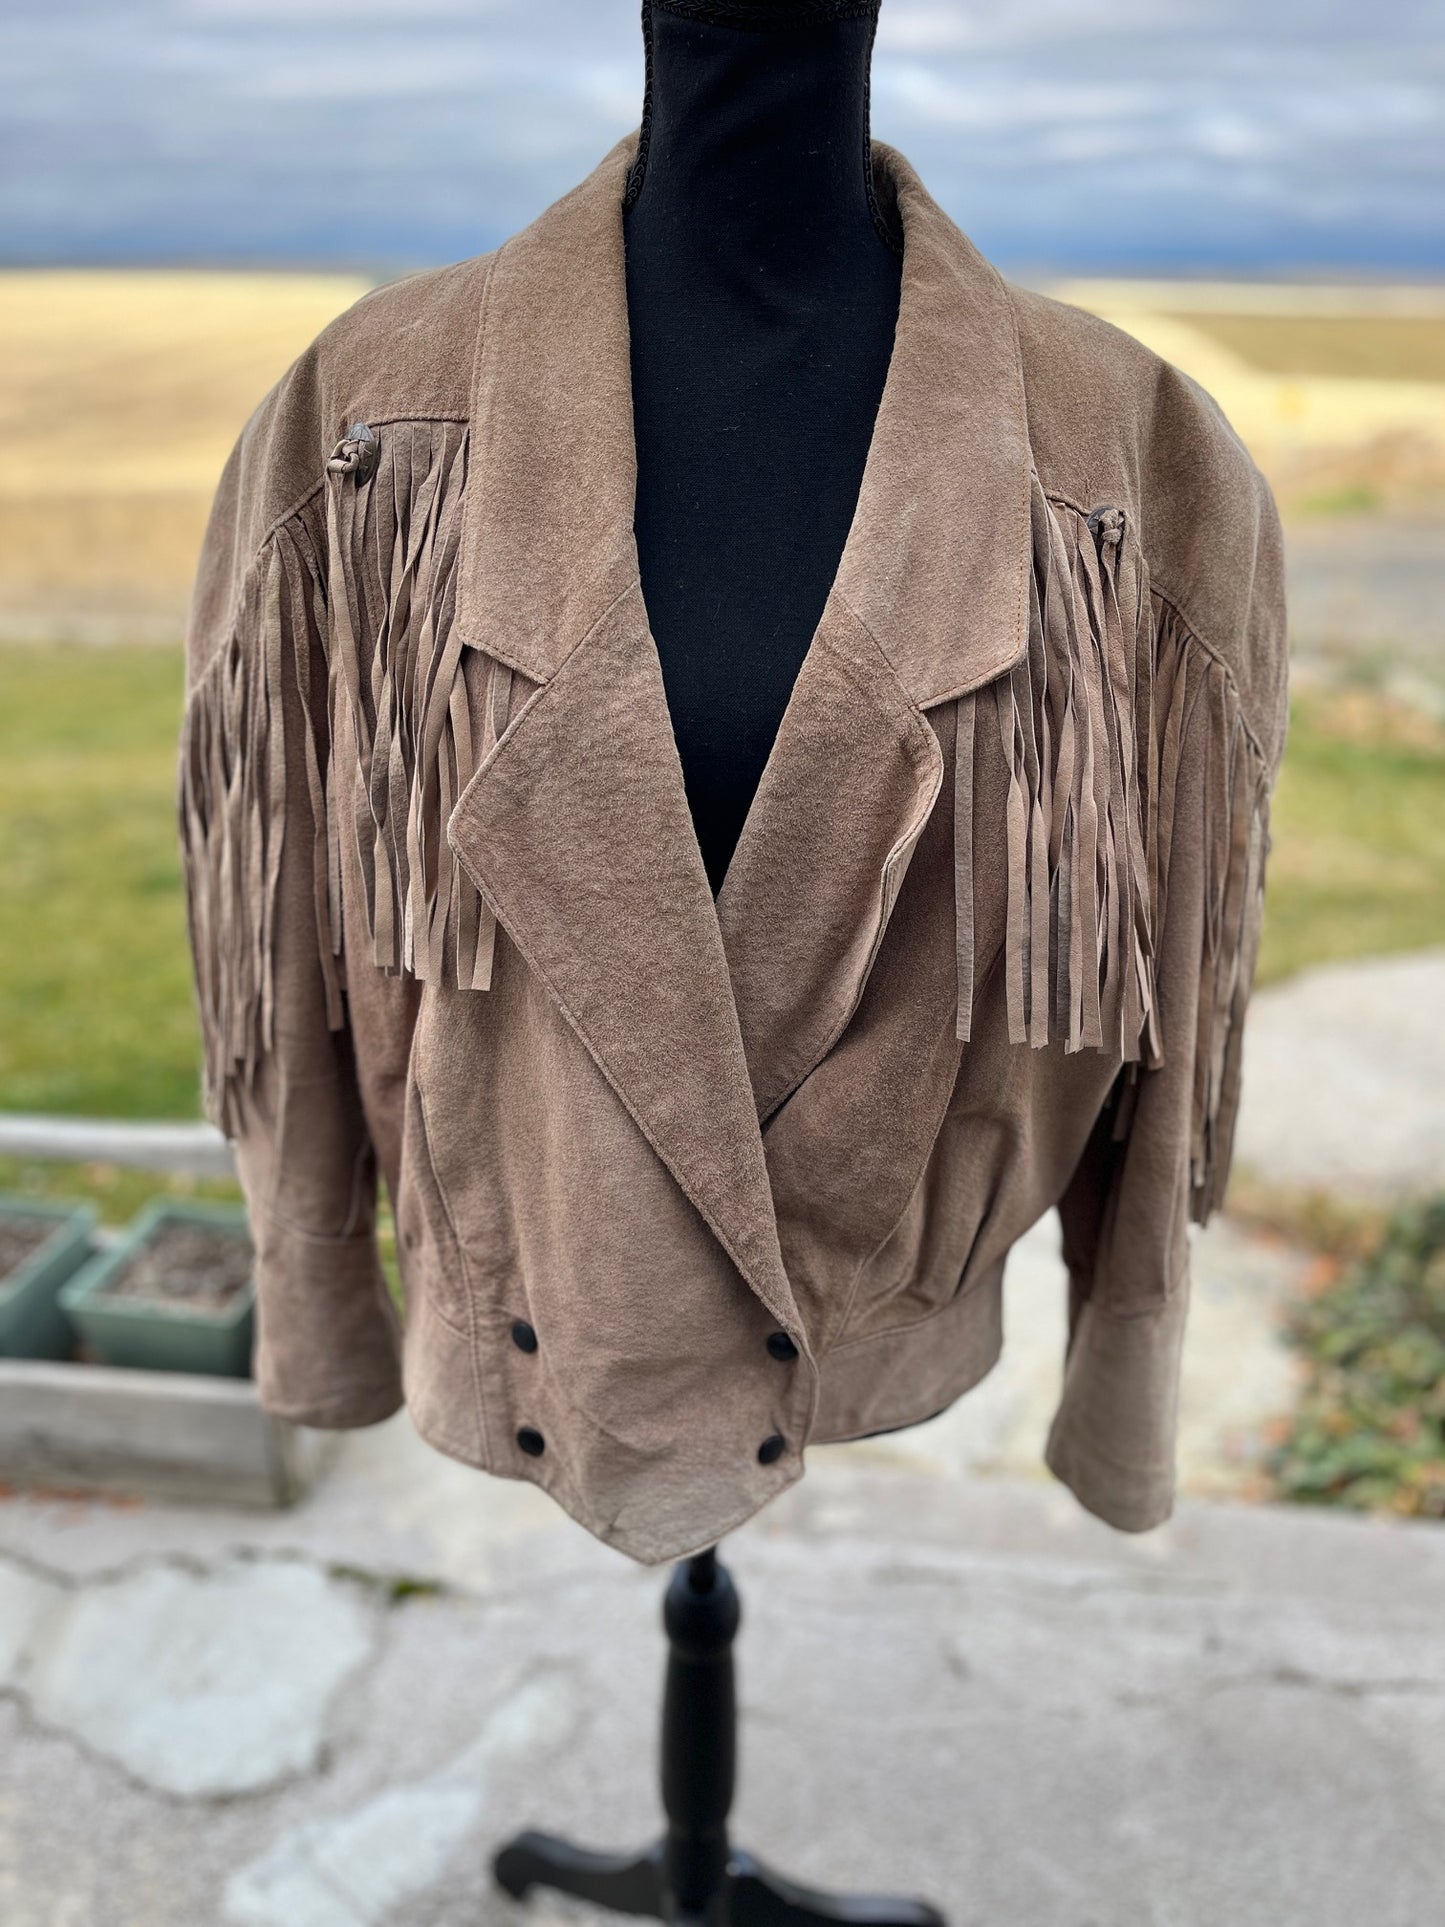 Leather Fringe Jacket - Women's Large